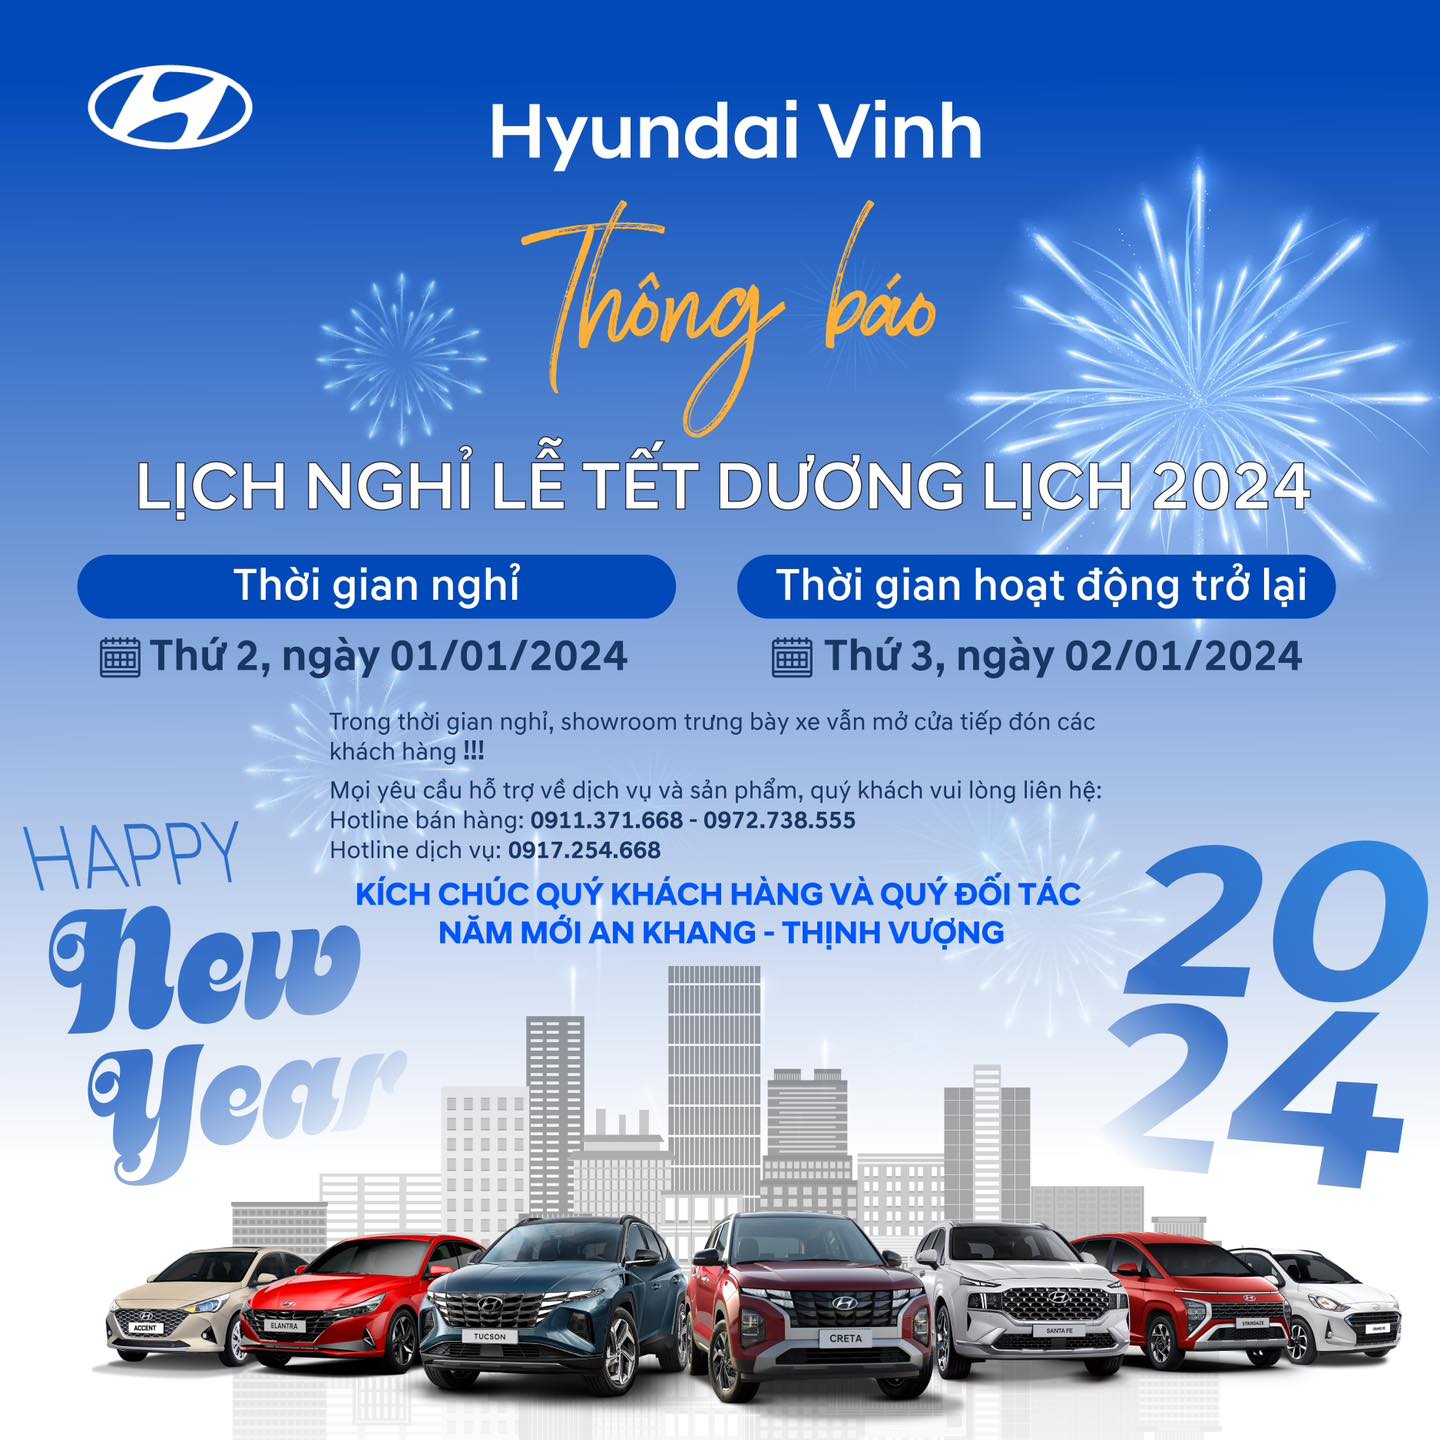 Hyundai Vinh Thông báo lịch nghỉ Tết Dương Lịch 2024